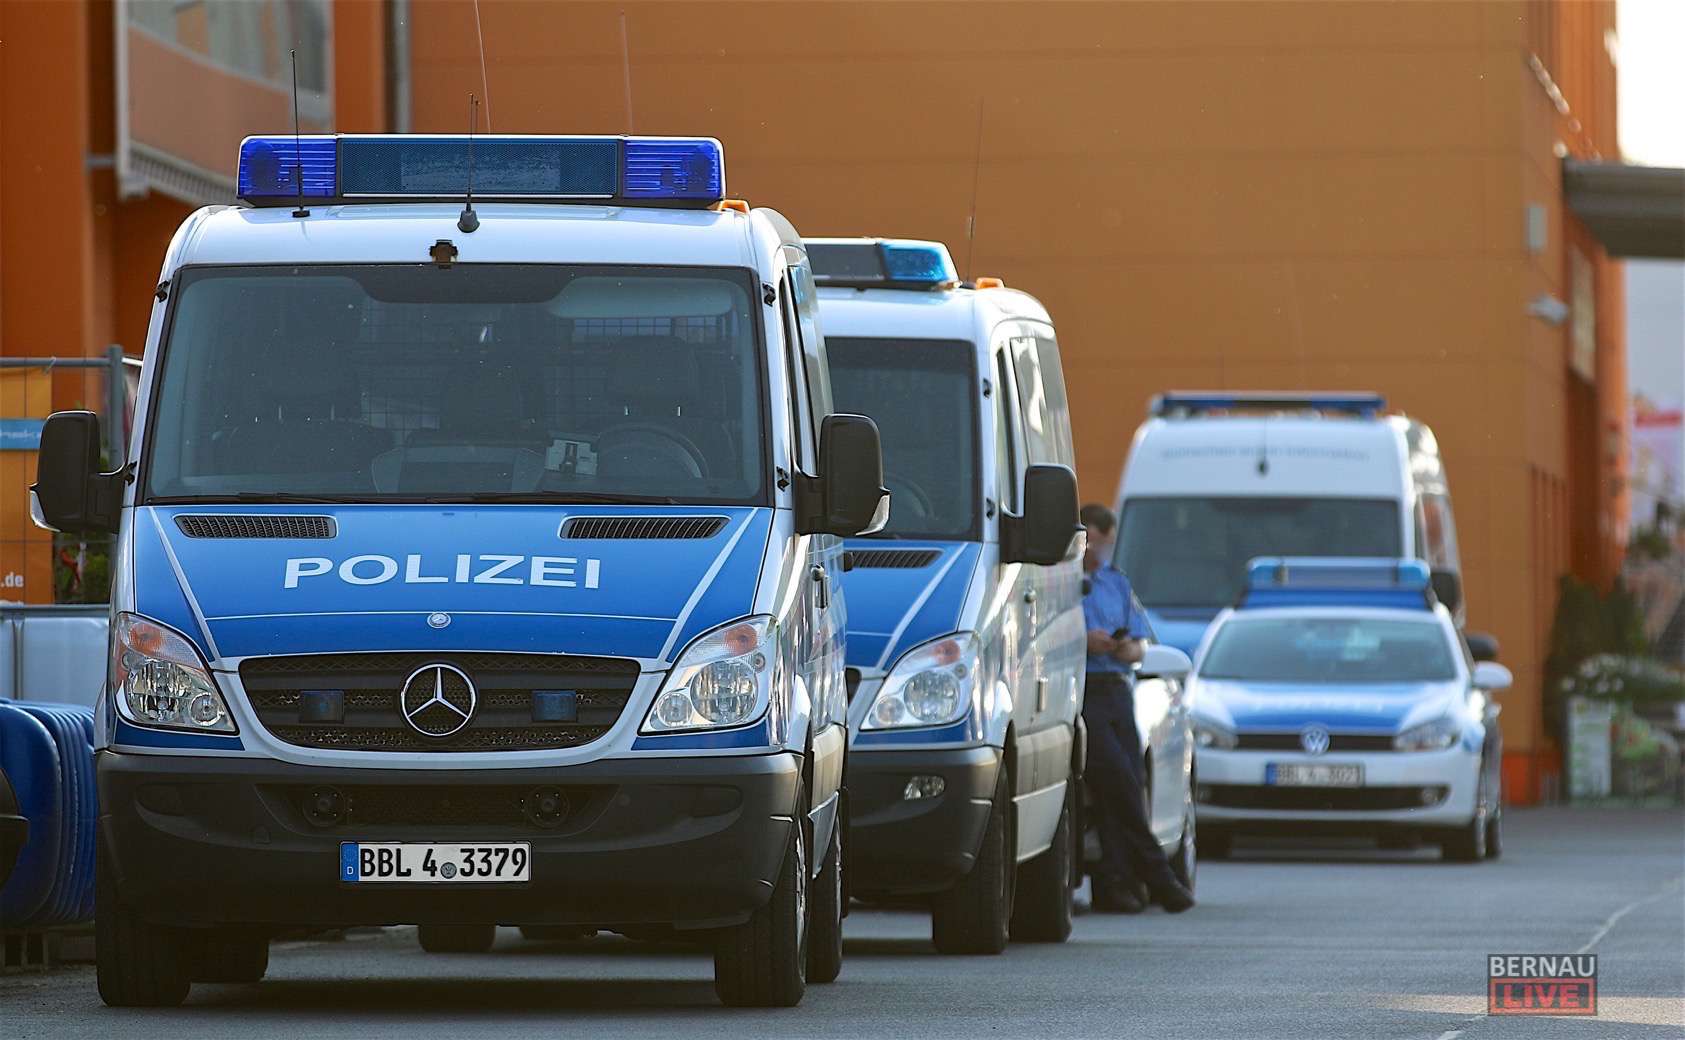 Polizei: Fahrzeugtreffen in Bernau der etwas anderen Art